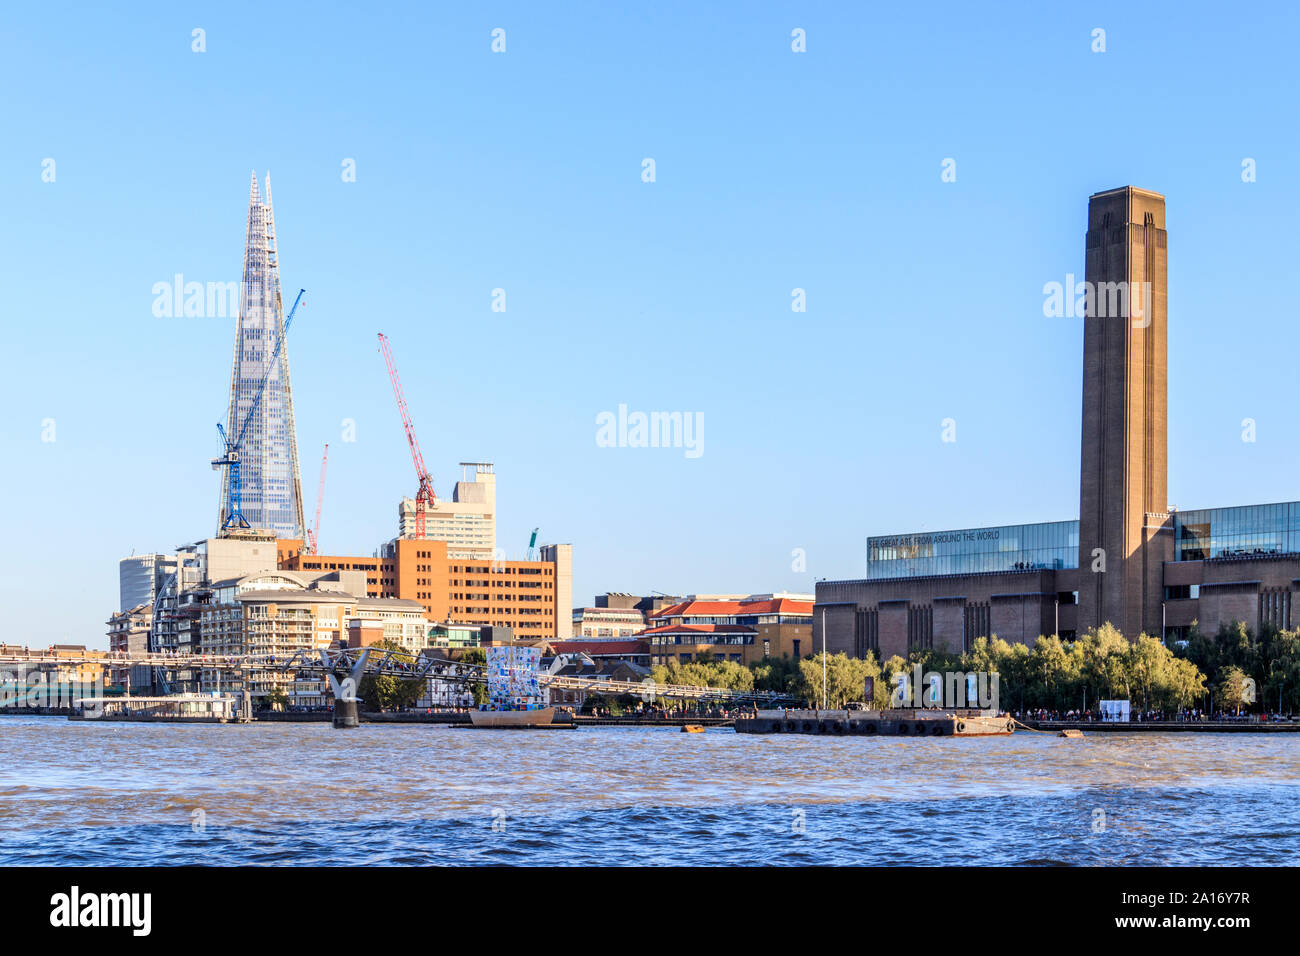 L'éclat de verre, le Millennium Bridge et la Tate Modern Art Gallery de l'autre côté de la rivière Thames, London, UK Banque D'Images